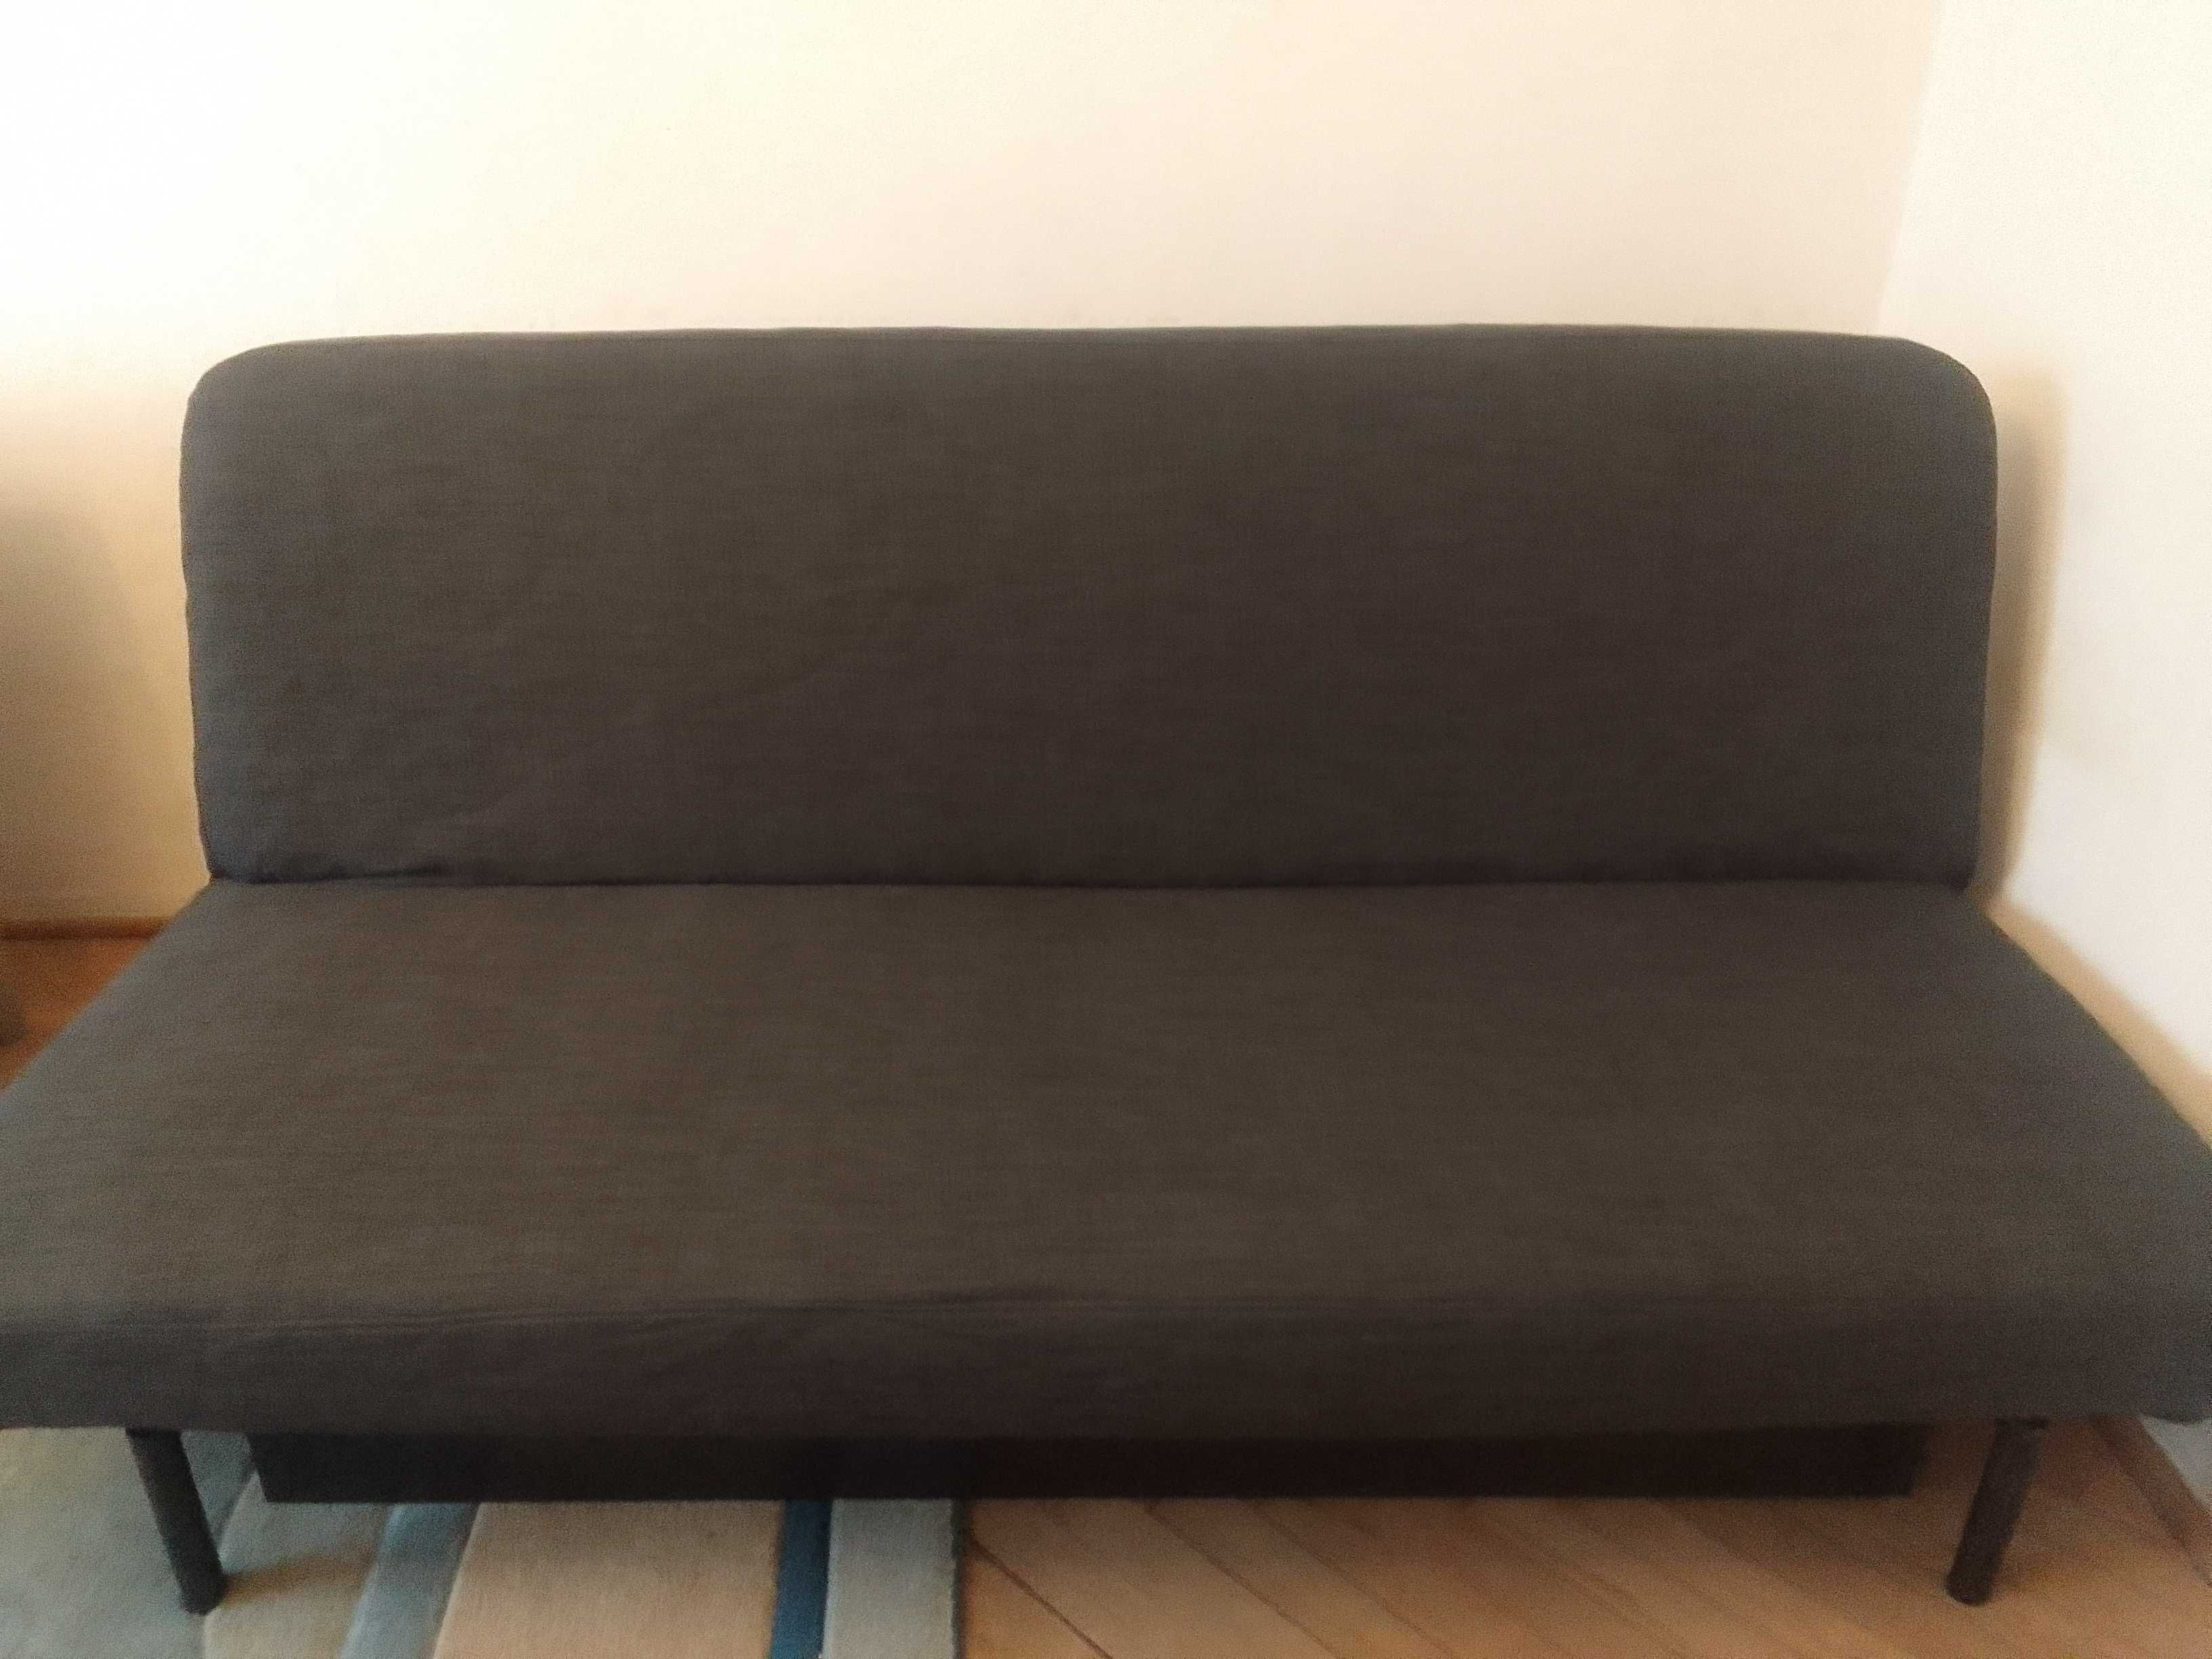 Nyhamn z opcją dowozu, sofa kanapa łóżko IKEA 140/200 materac lateks